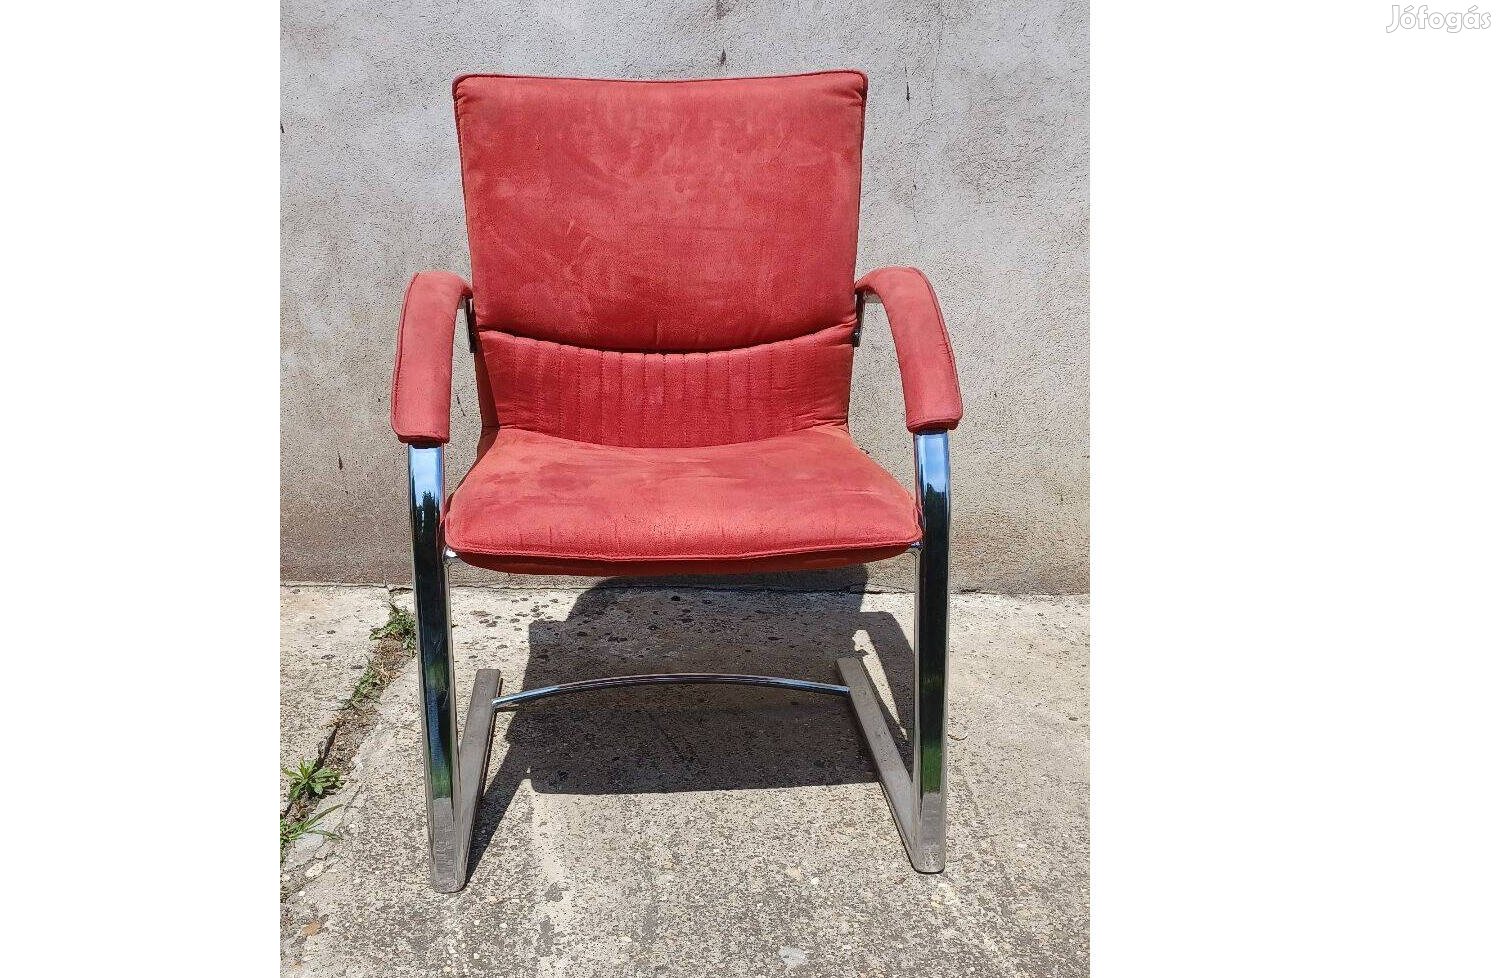 Bordó kárpitos,stabil fémlábú,karfás szék